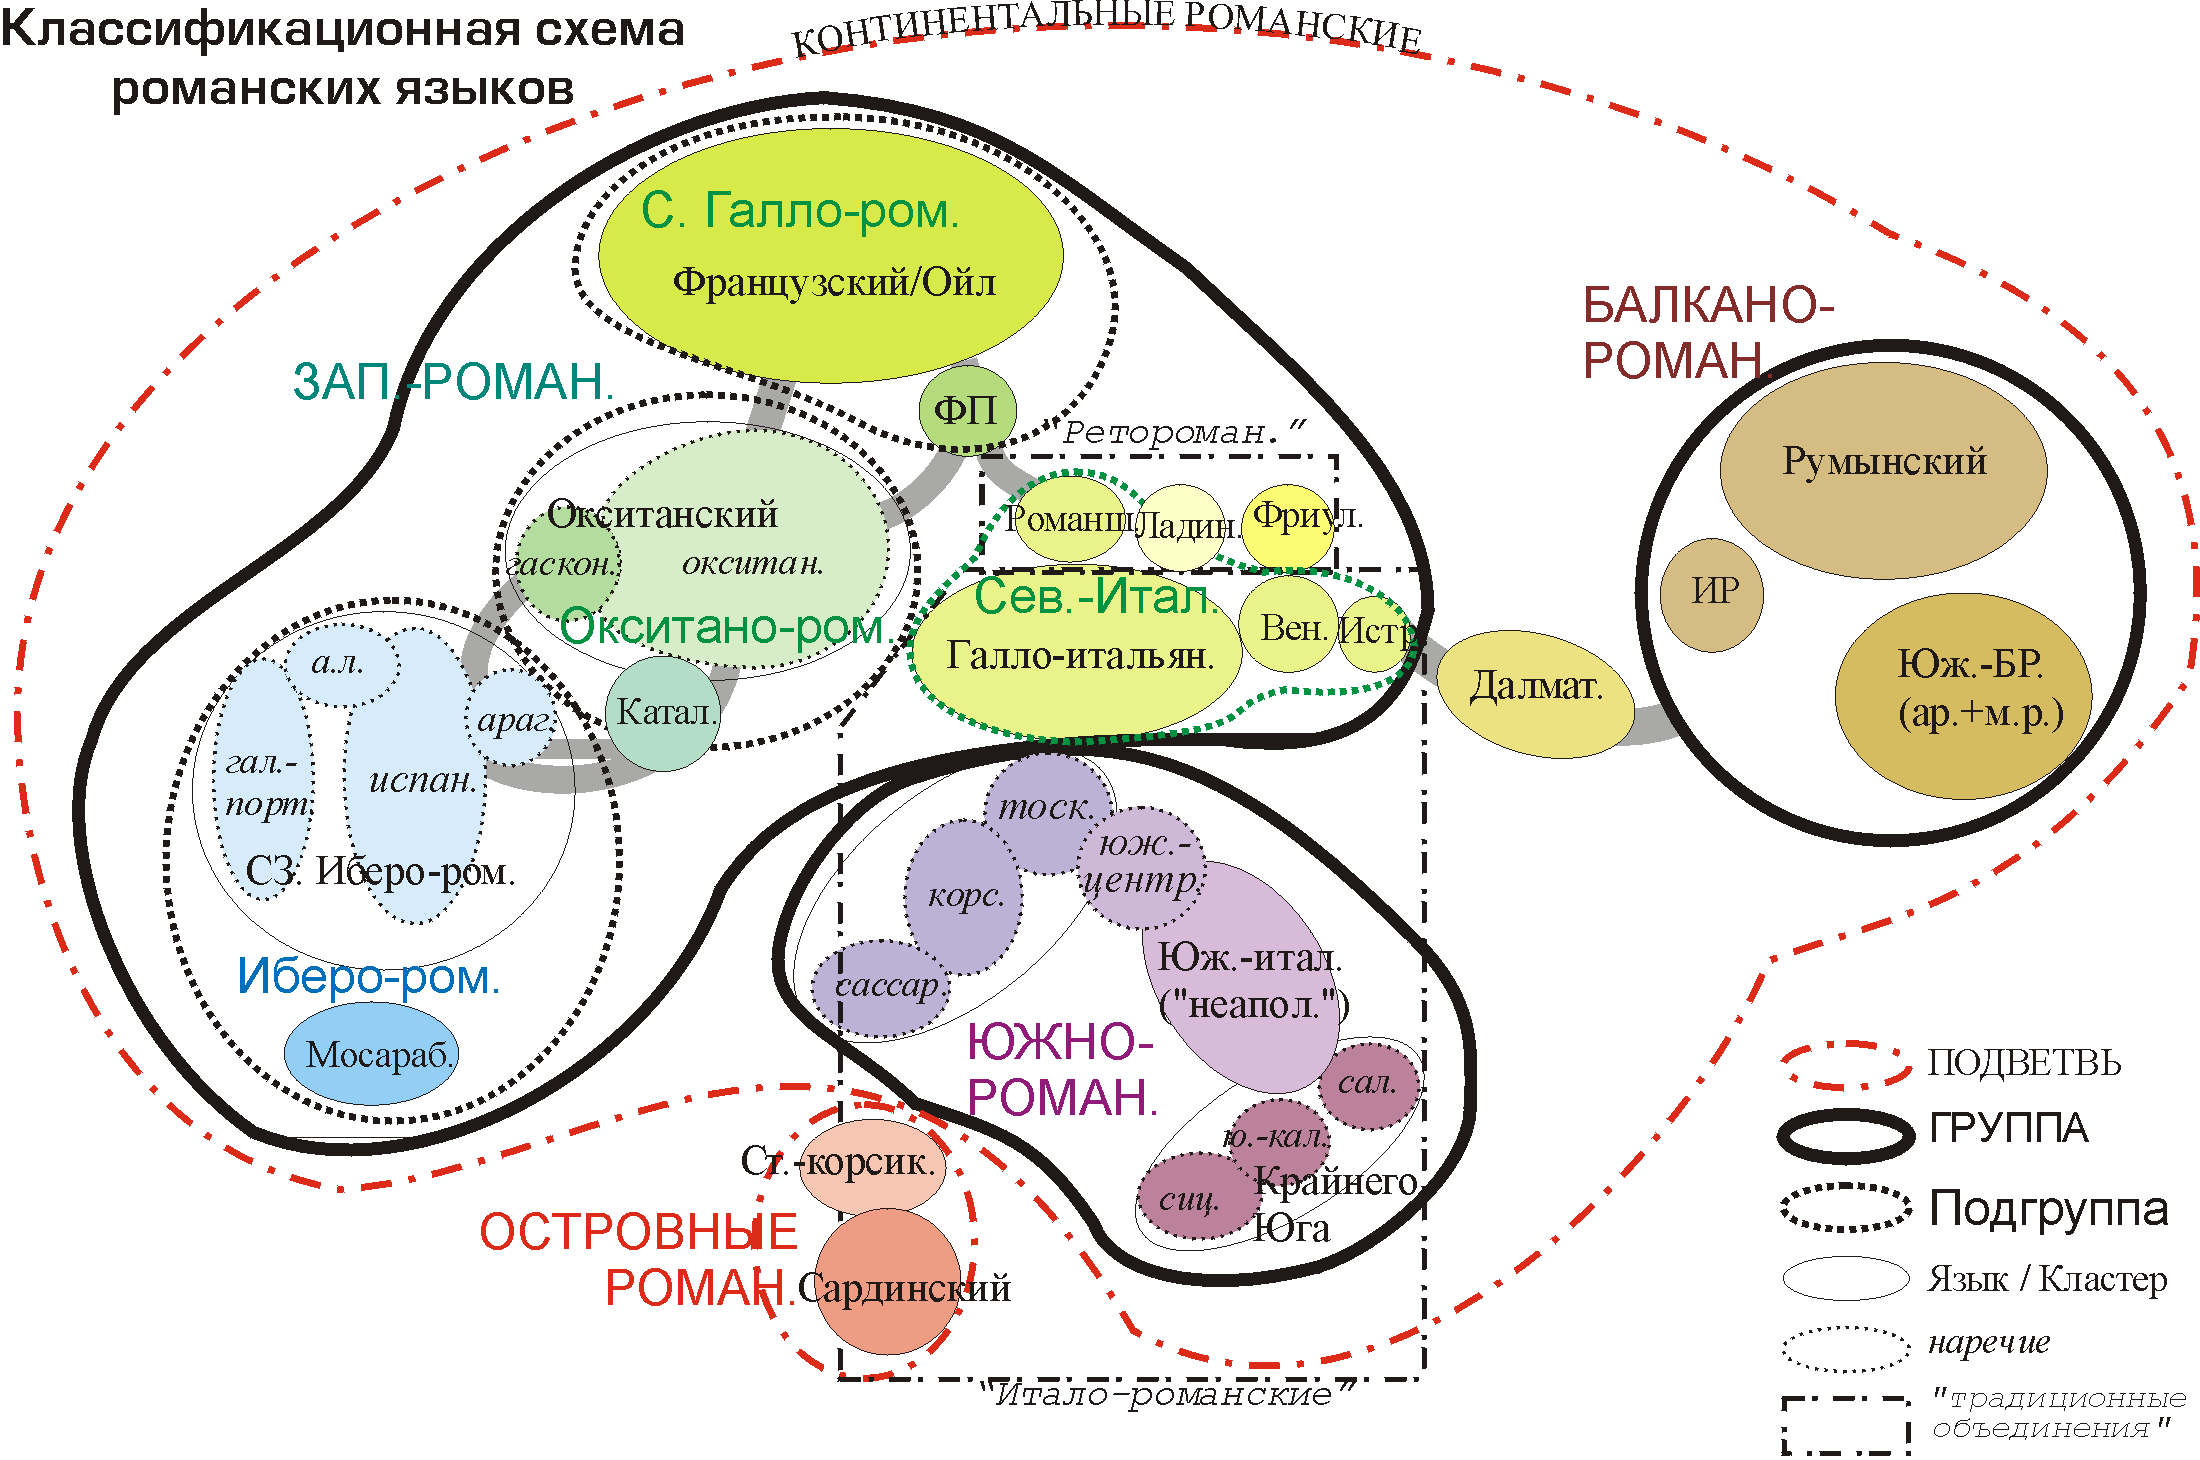 Классификация романских языков и диалектов